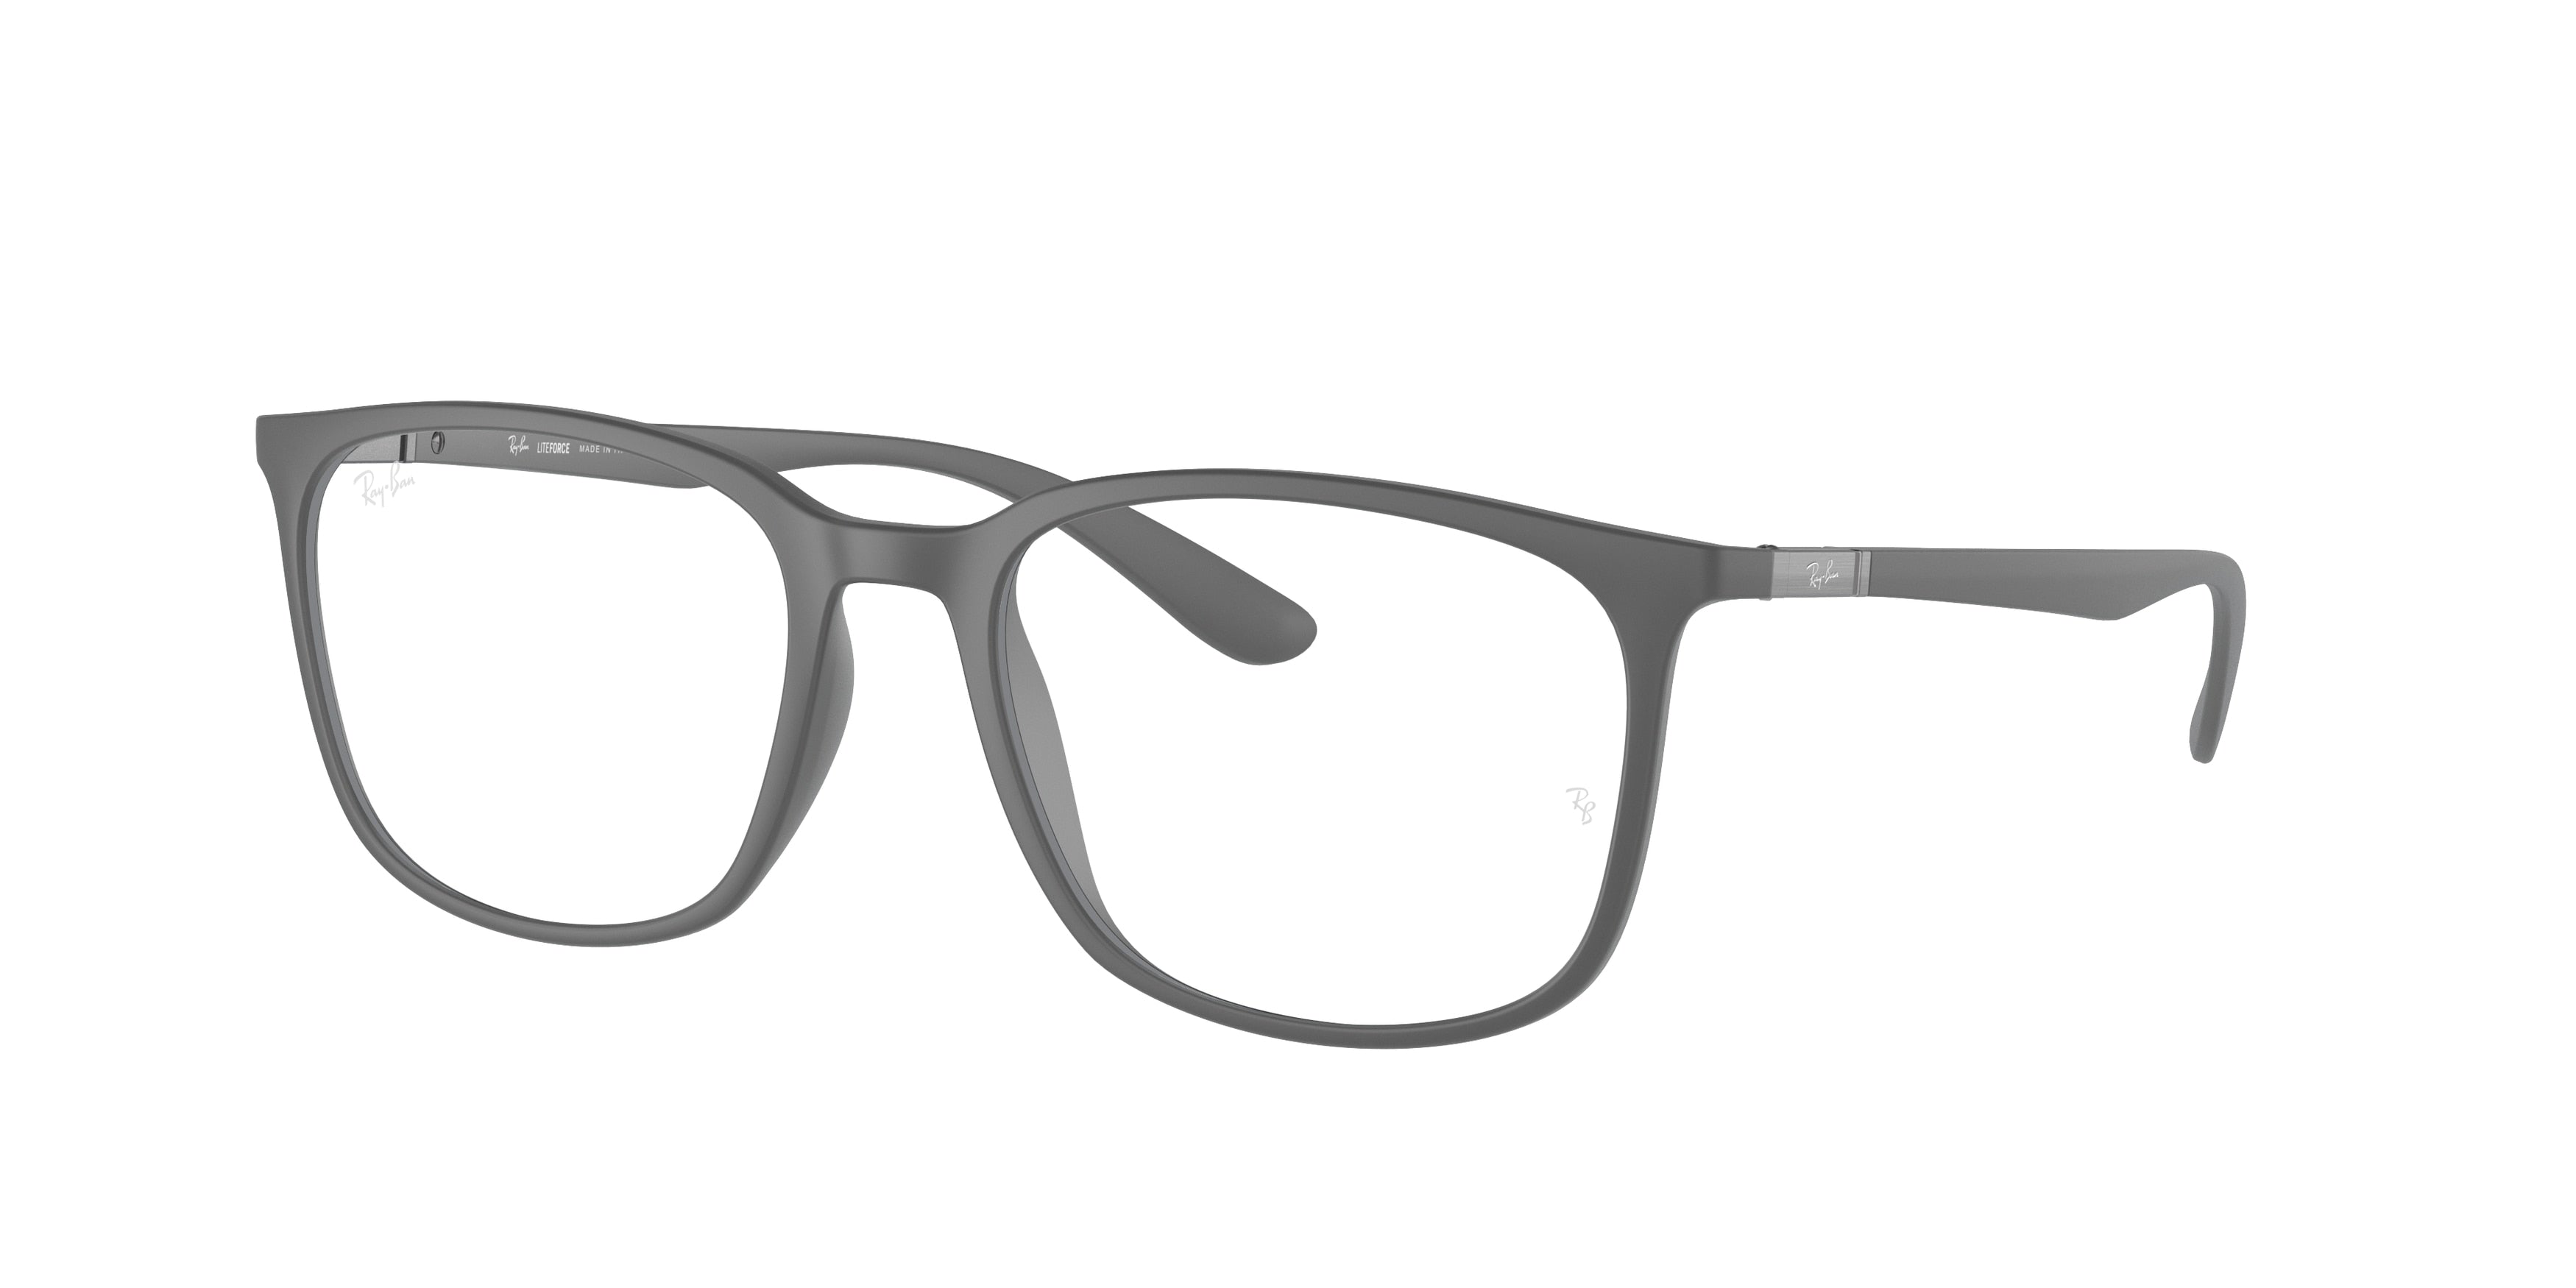 Ray-Ban Optical RX7199 Square Eyeglasses  5521-Grey 53-145-18 - Color Map Grey